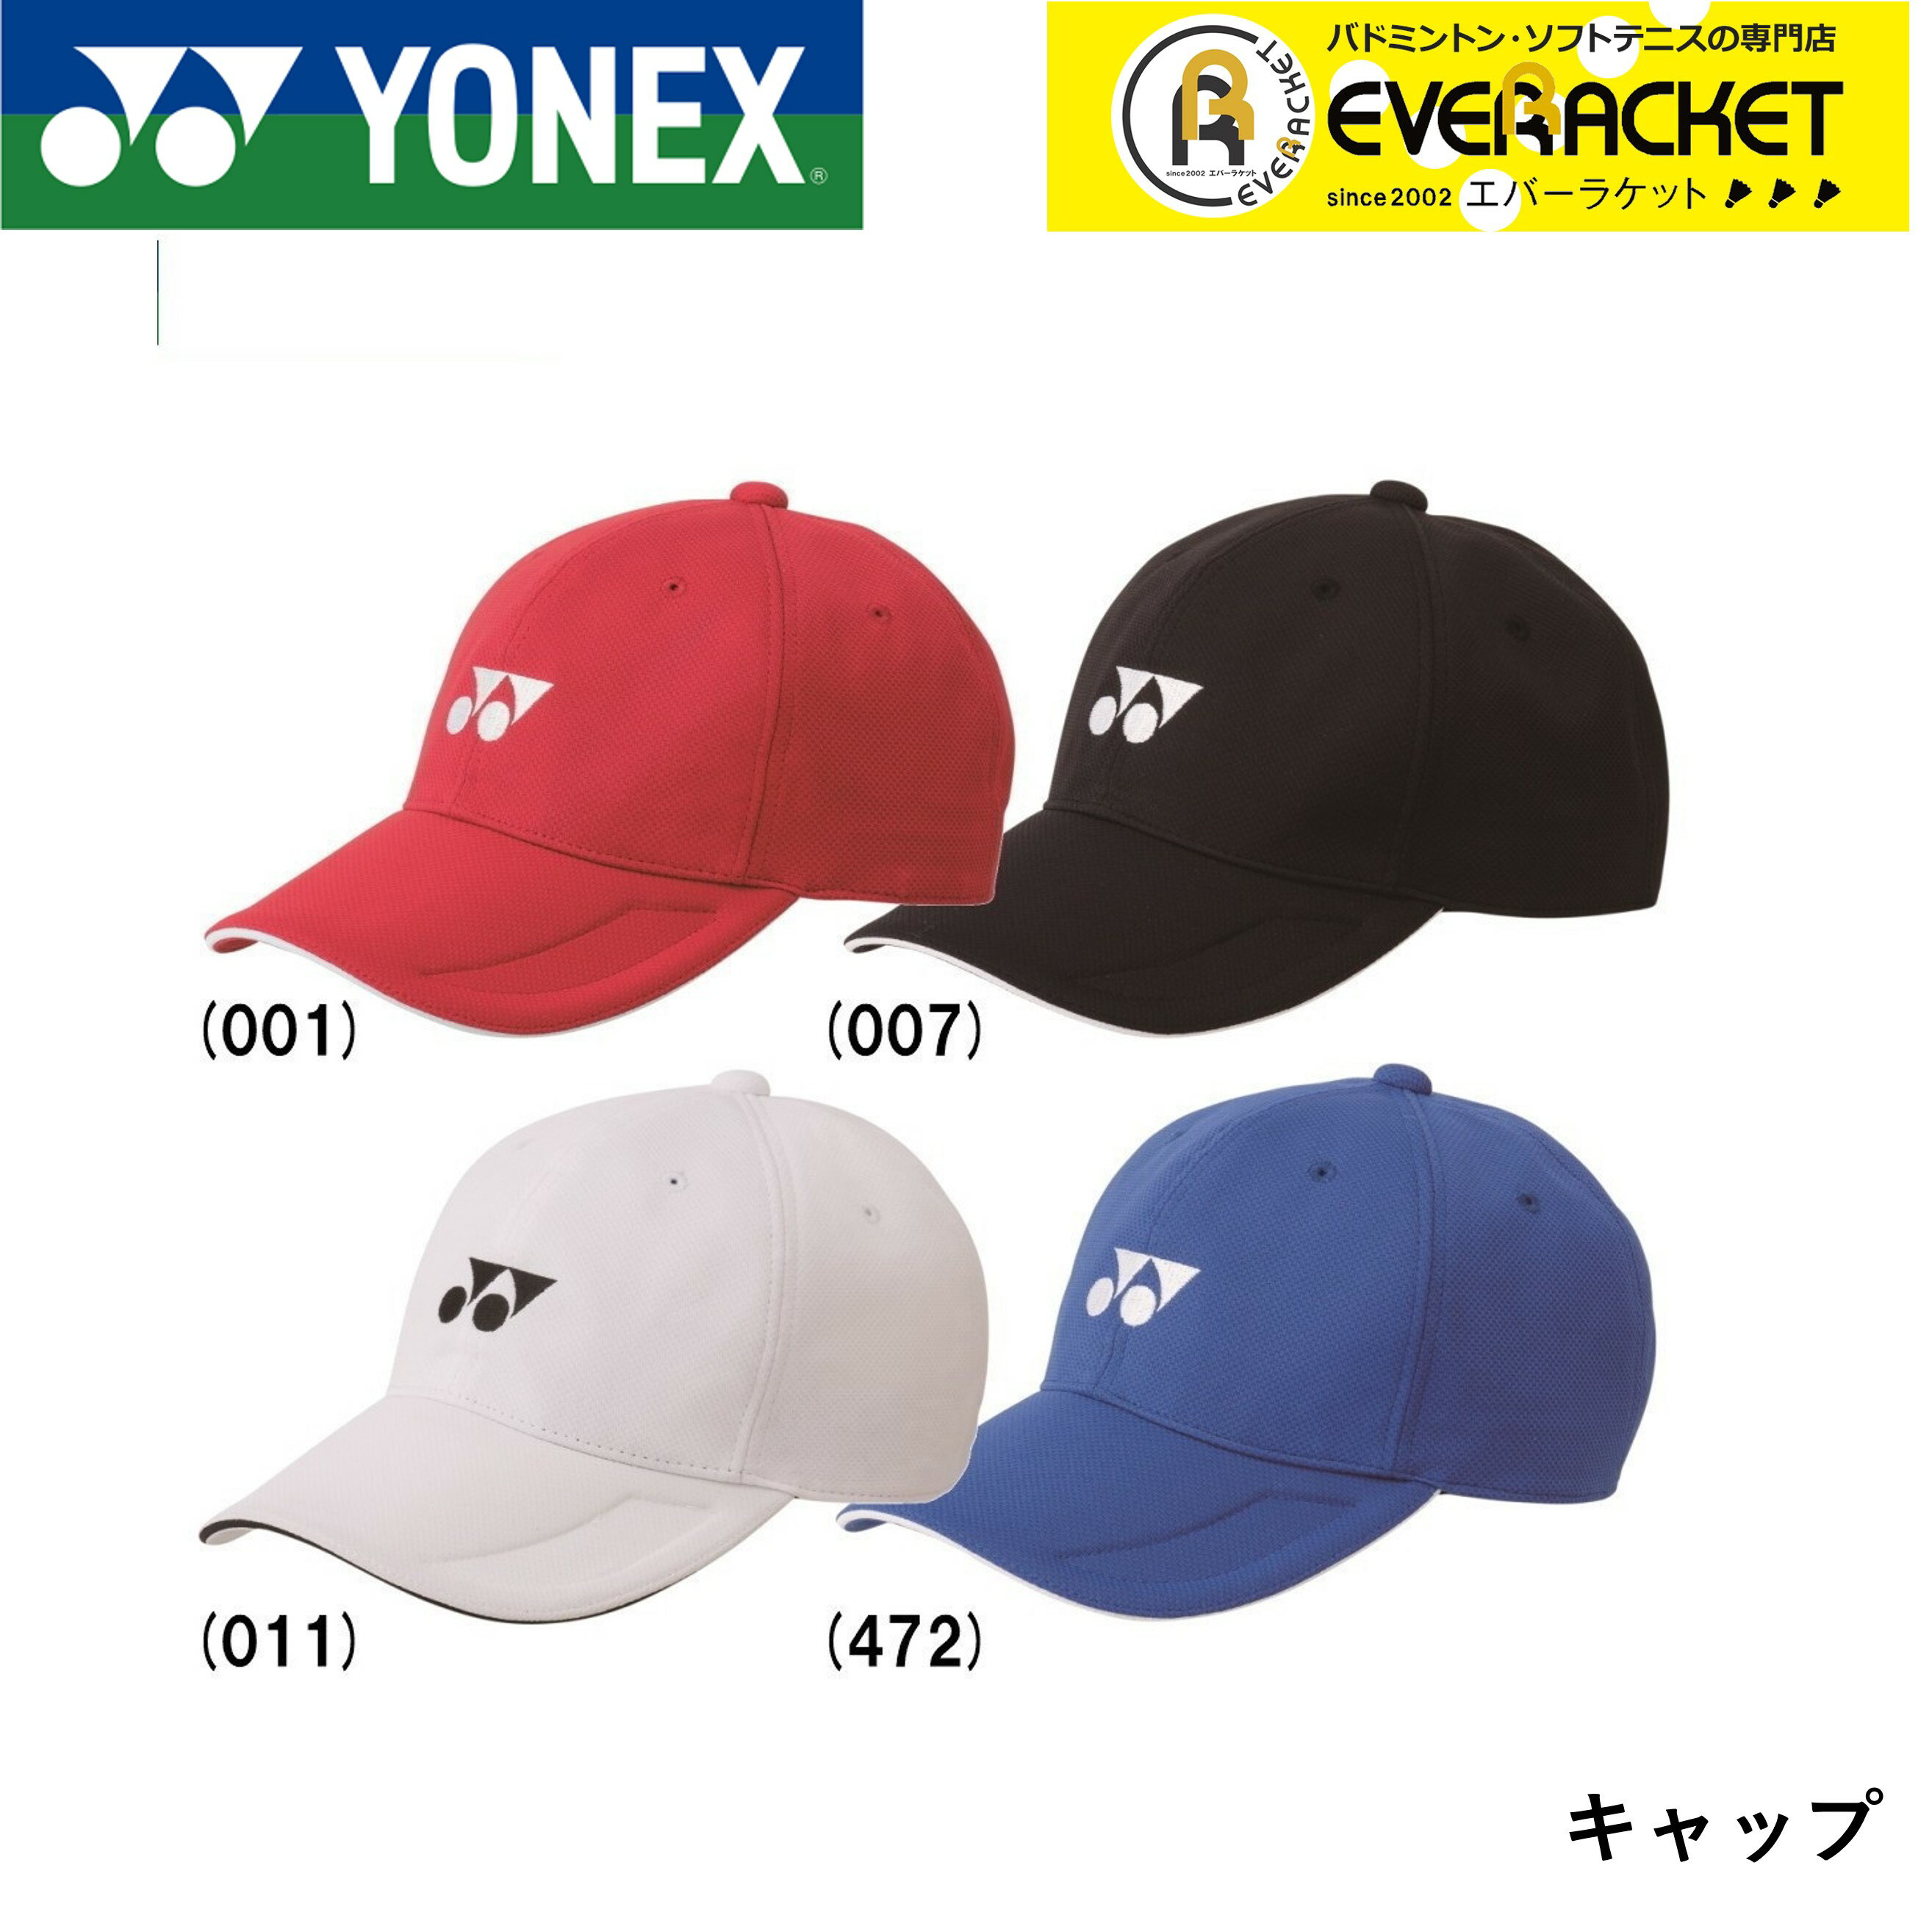 ヨネックス YONEX アクセサリ ユニキャップ 40061